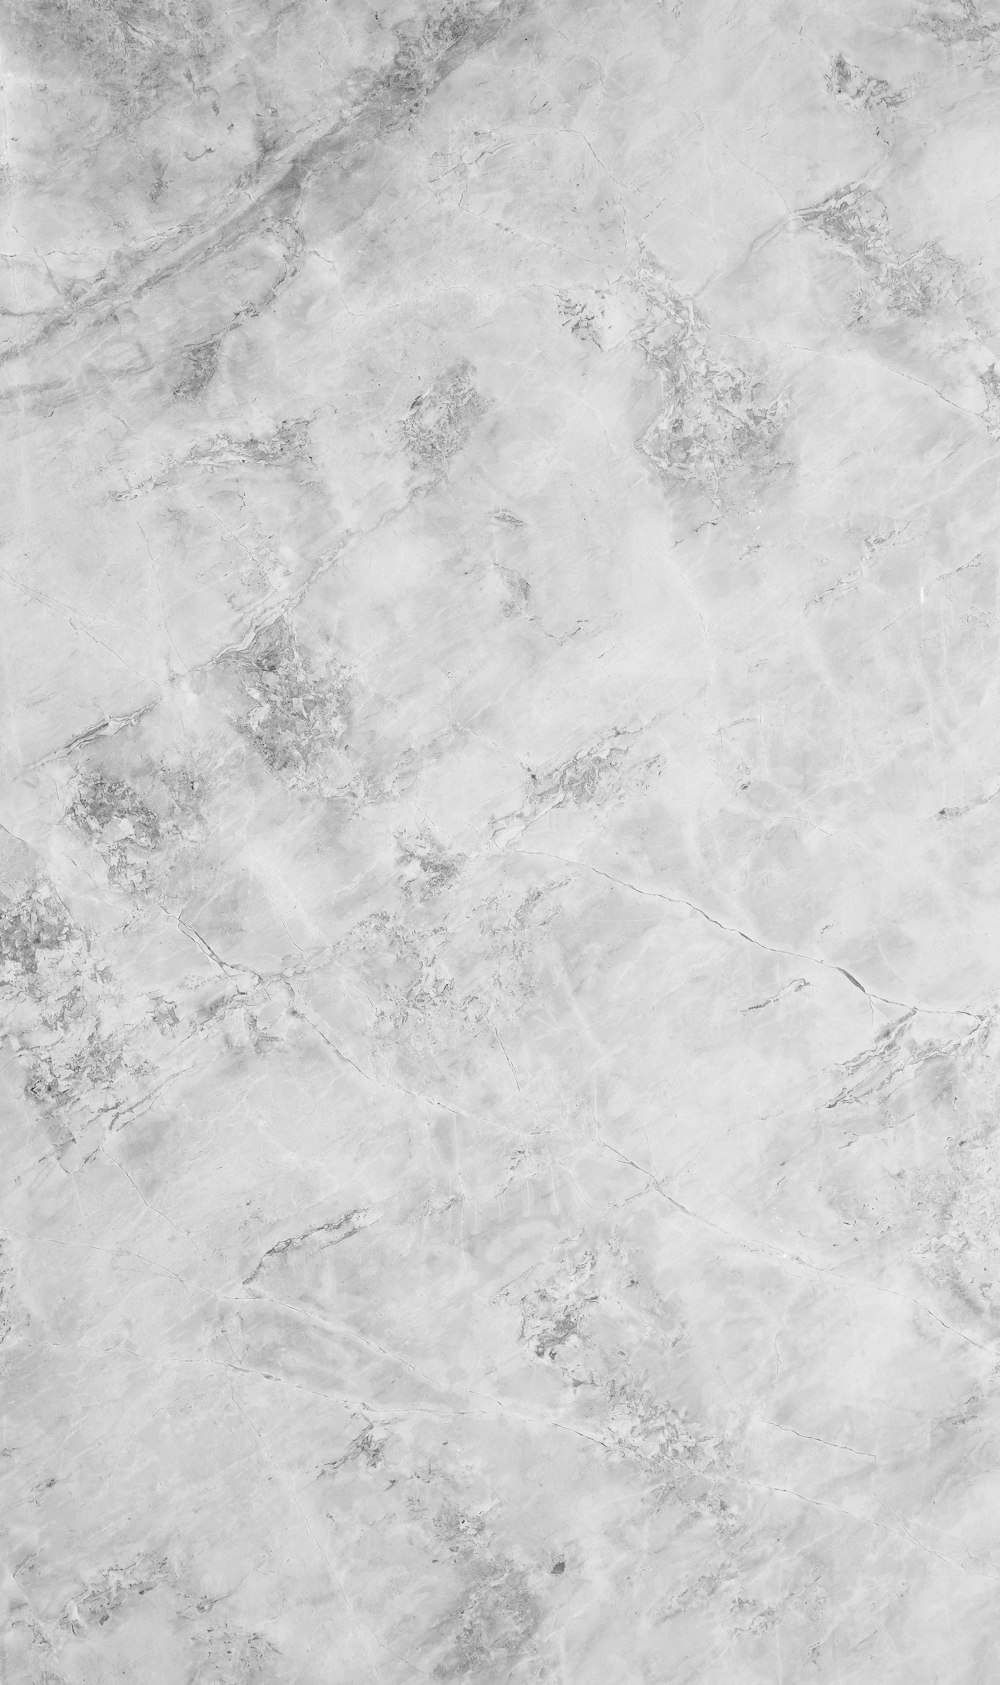 Una foto en blanco y negro de una superficie de mármol